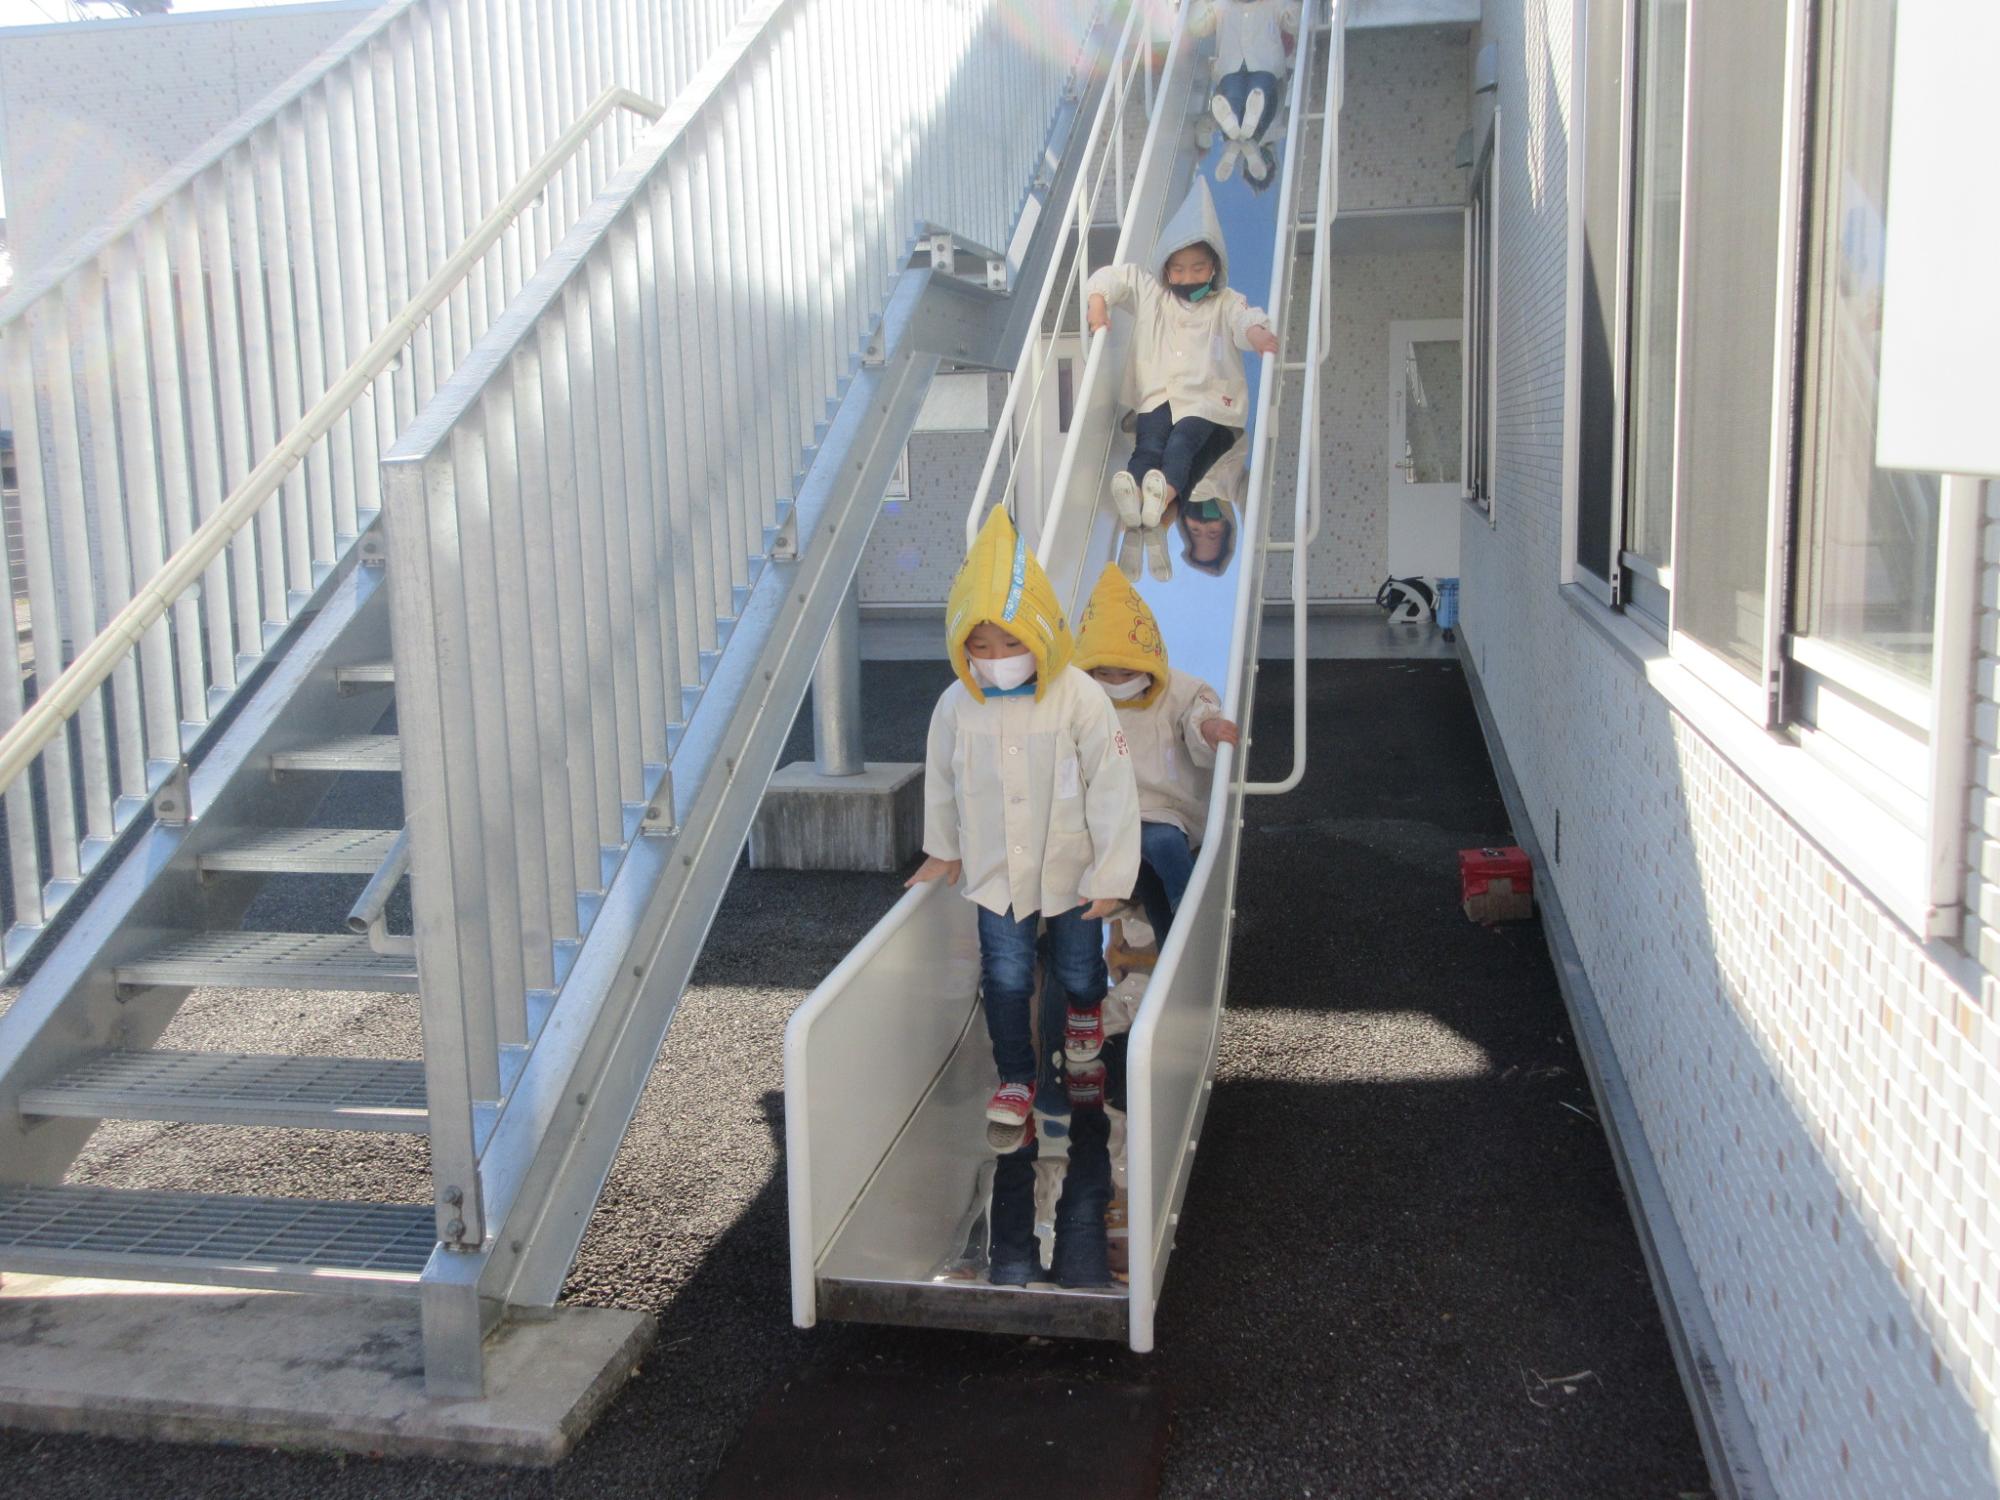 避難訓練で避難用のすべりだ台を初めて使用して避難している写真です。